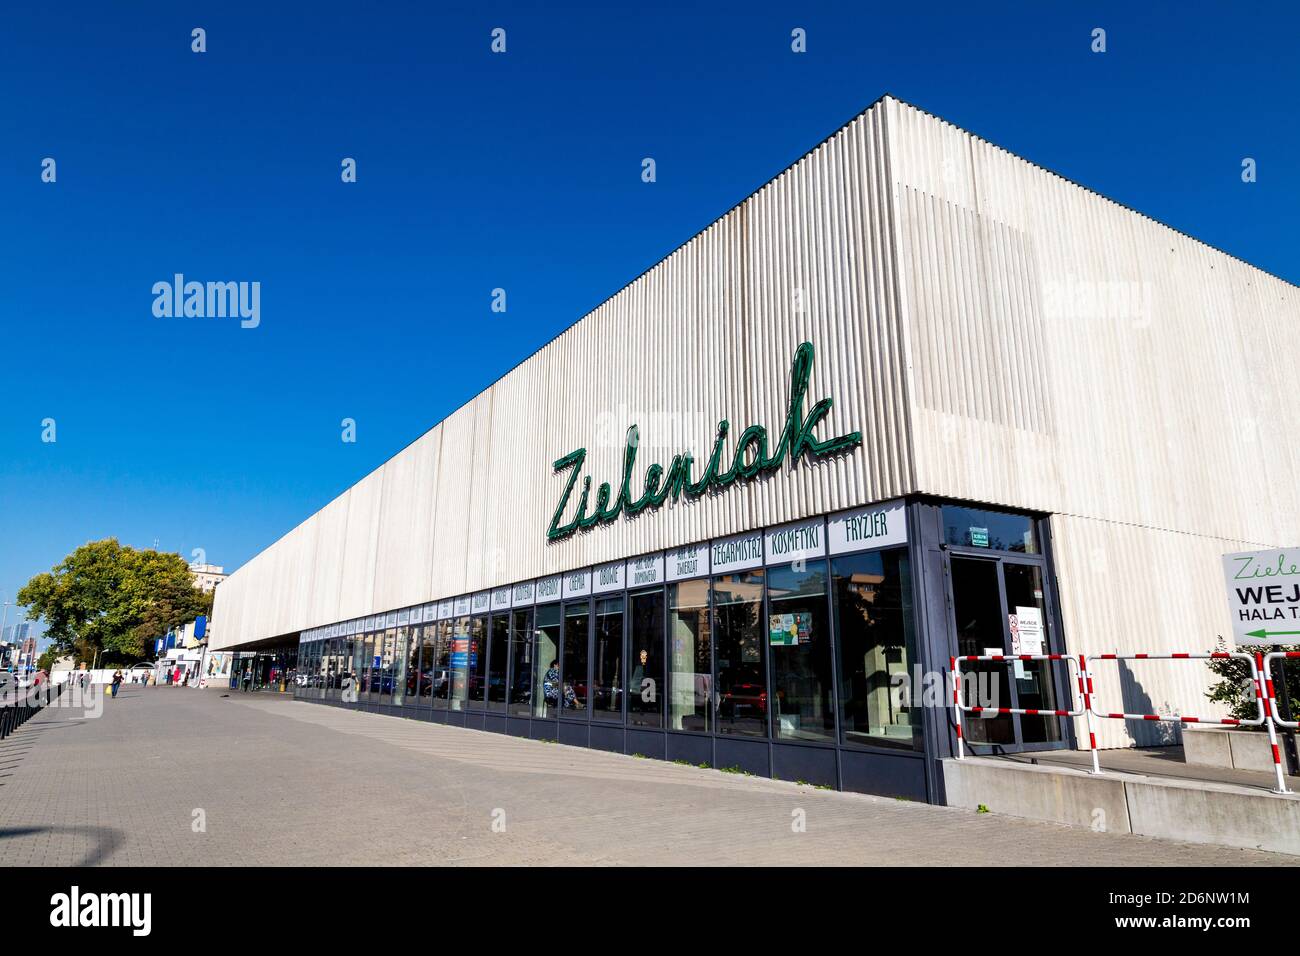 Extérieur de Zieleniak enseigne au néon sur la façade, place du marché pour les produits d'épicerie frais, quartier d'Ochota, Varsovie, Pologne Banque D'Images